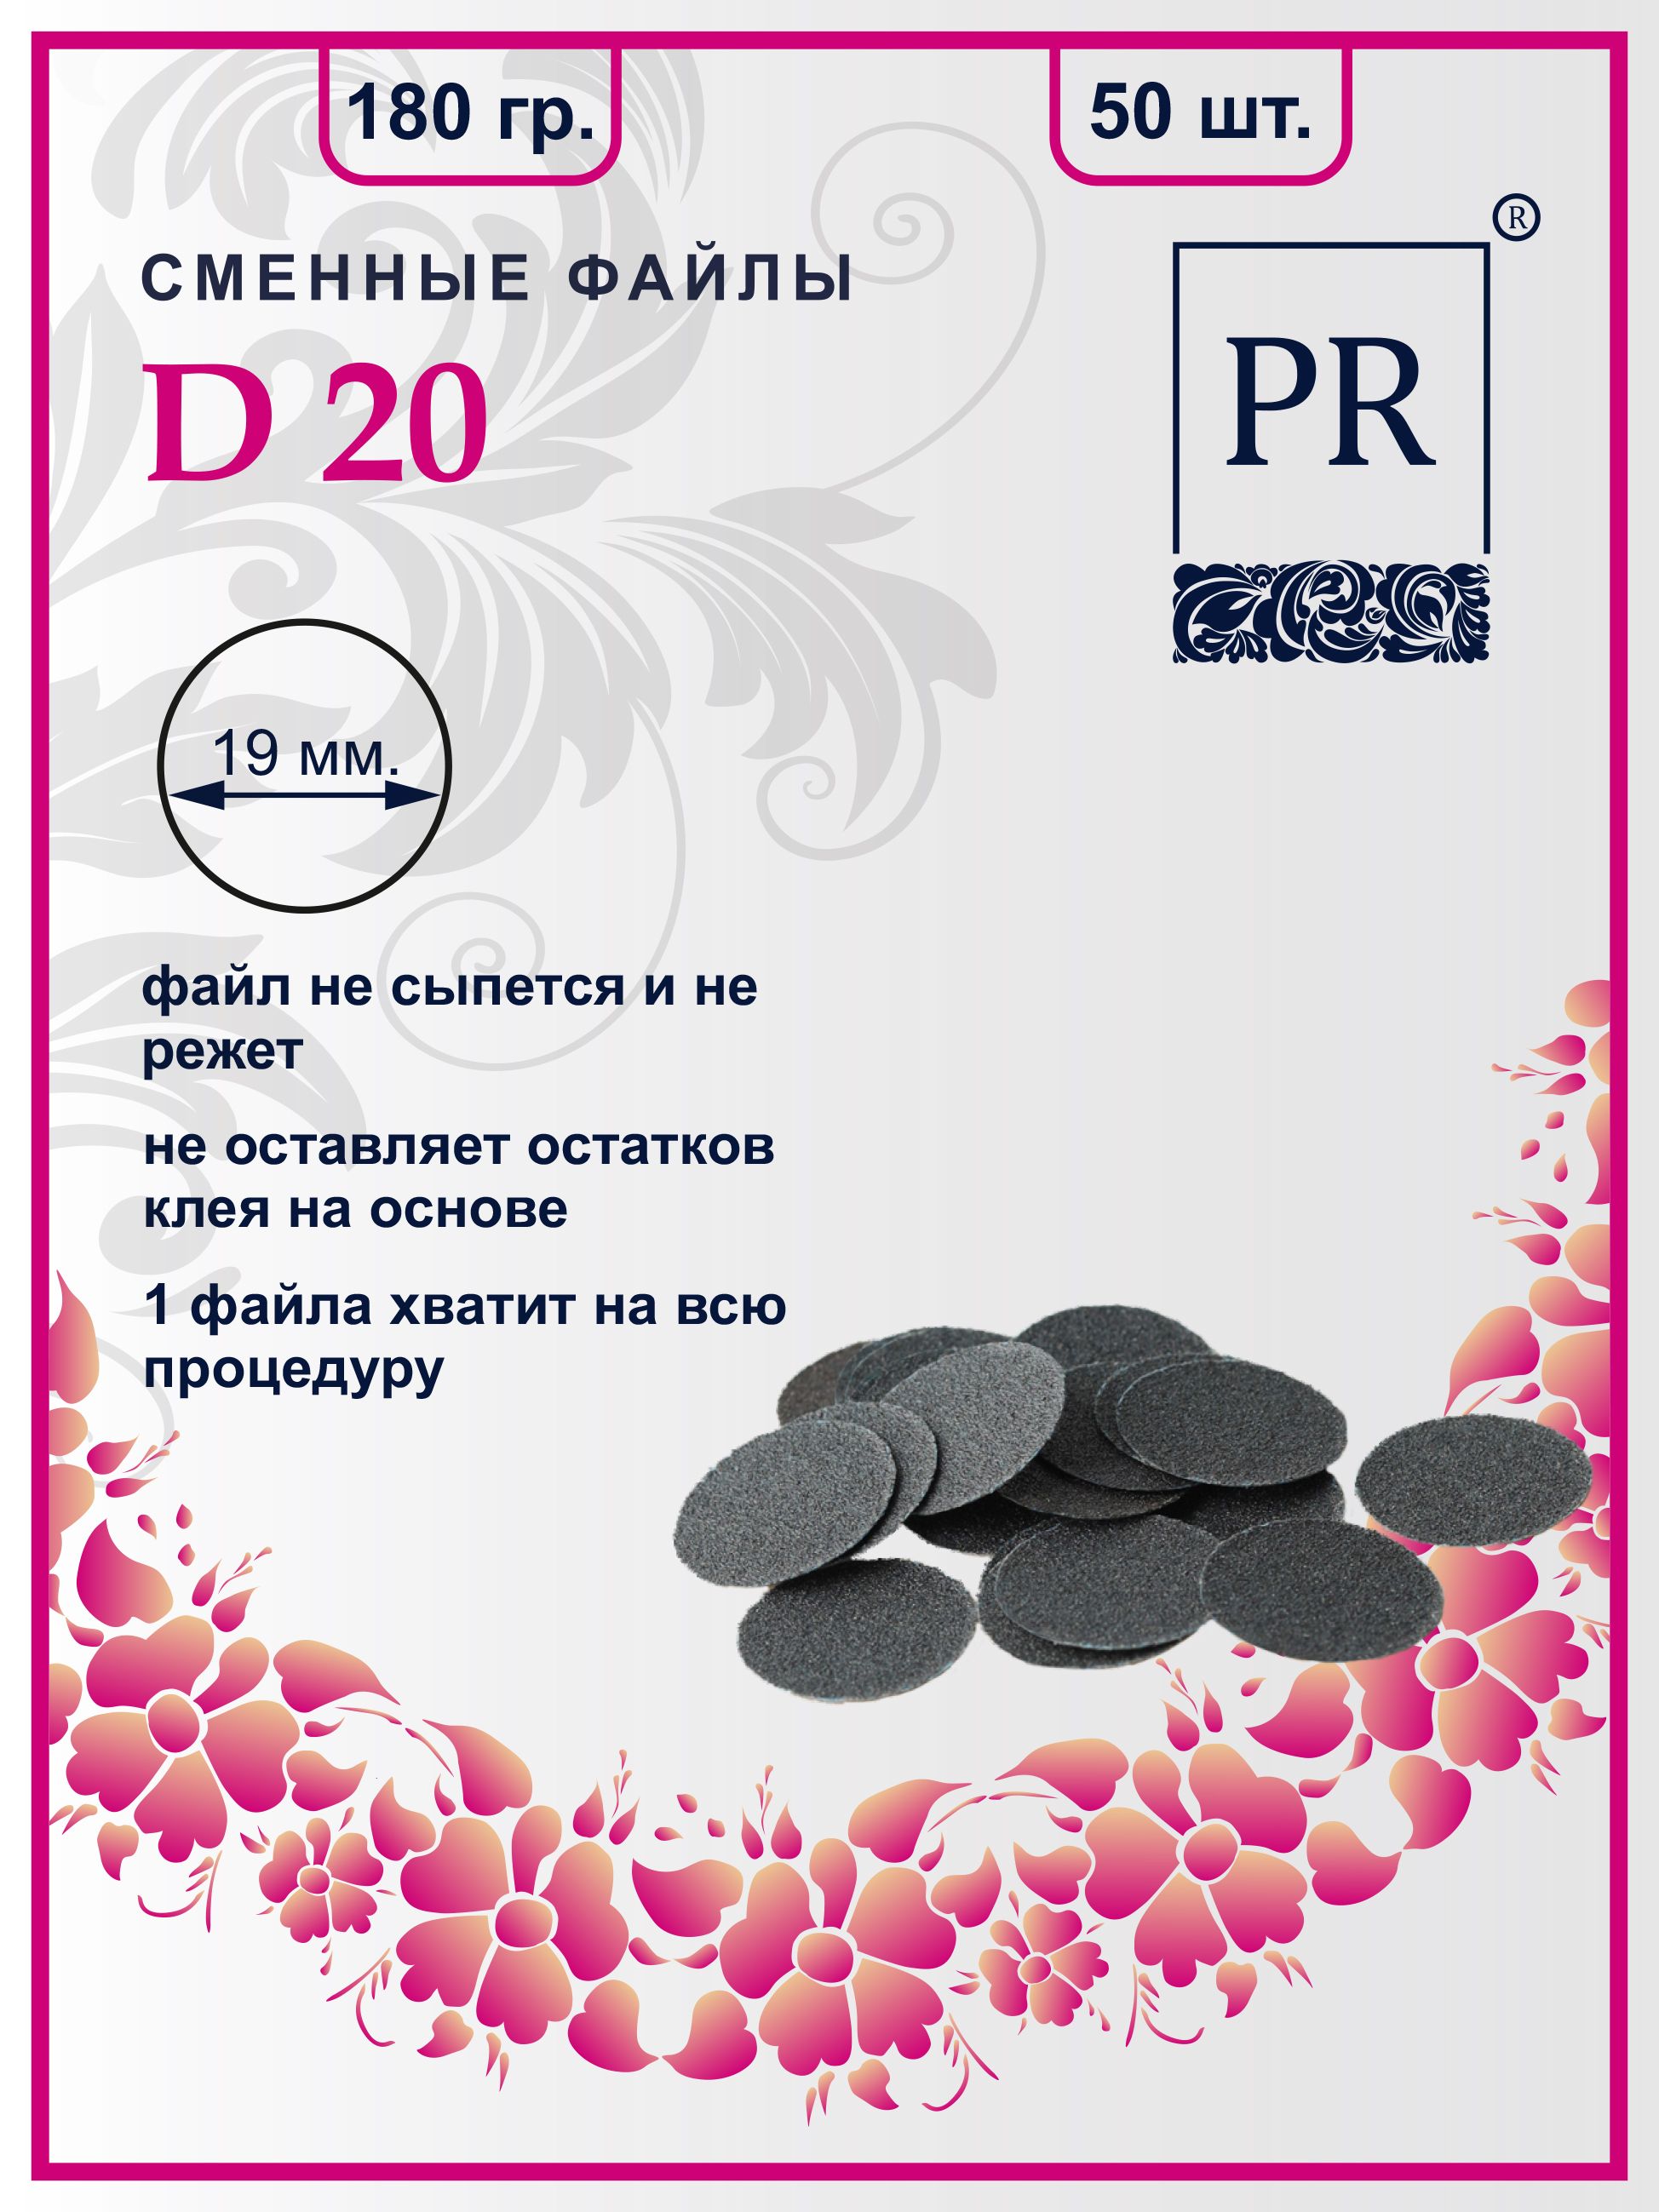 Сменные файлы Pilochki Russia диски для педикюра для диска М 180 грит 50 штук сменные файлы pilochki russia диски для педикюра для диска м 150 грит 50 штук